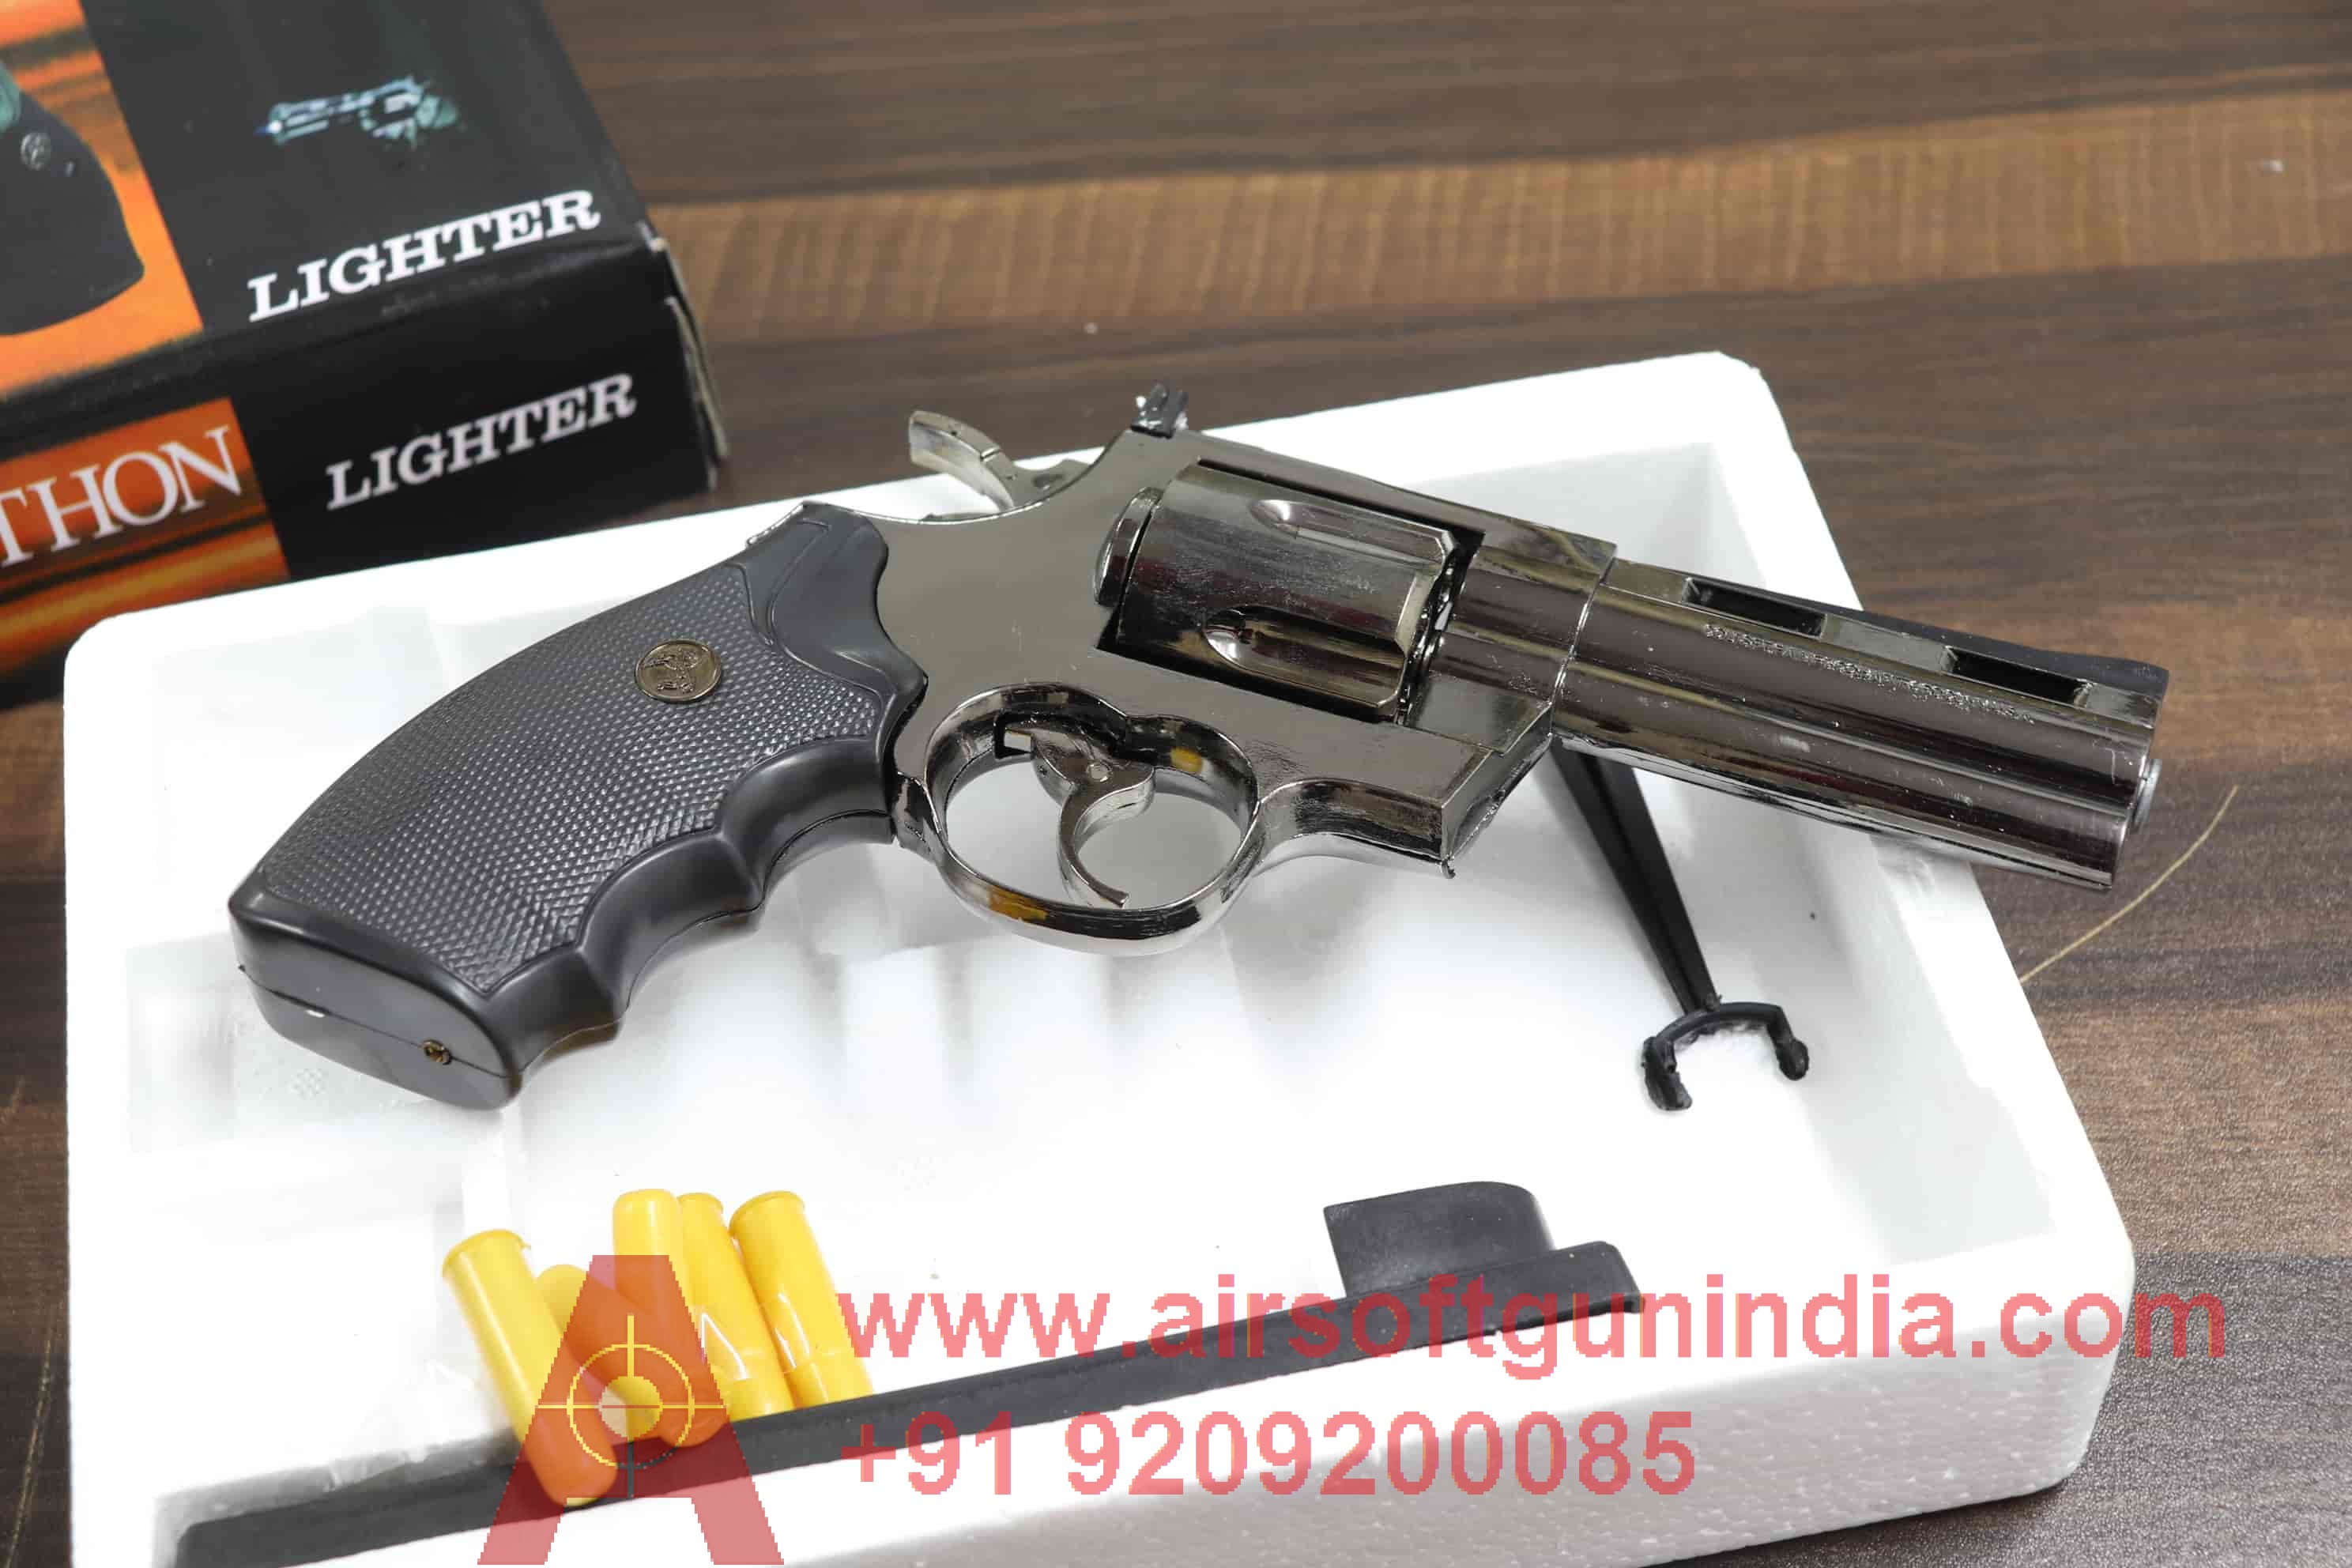 MK683-1 Airsoft Rifle By Airsoft Gun India